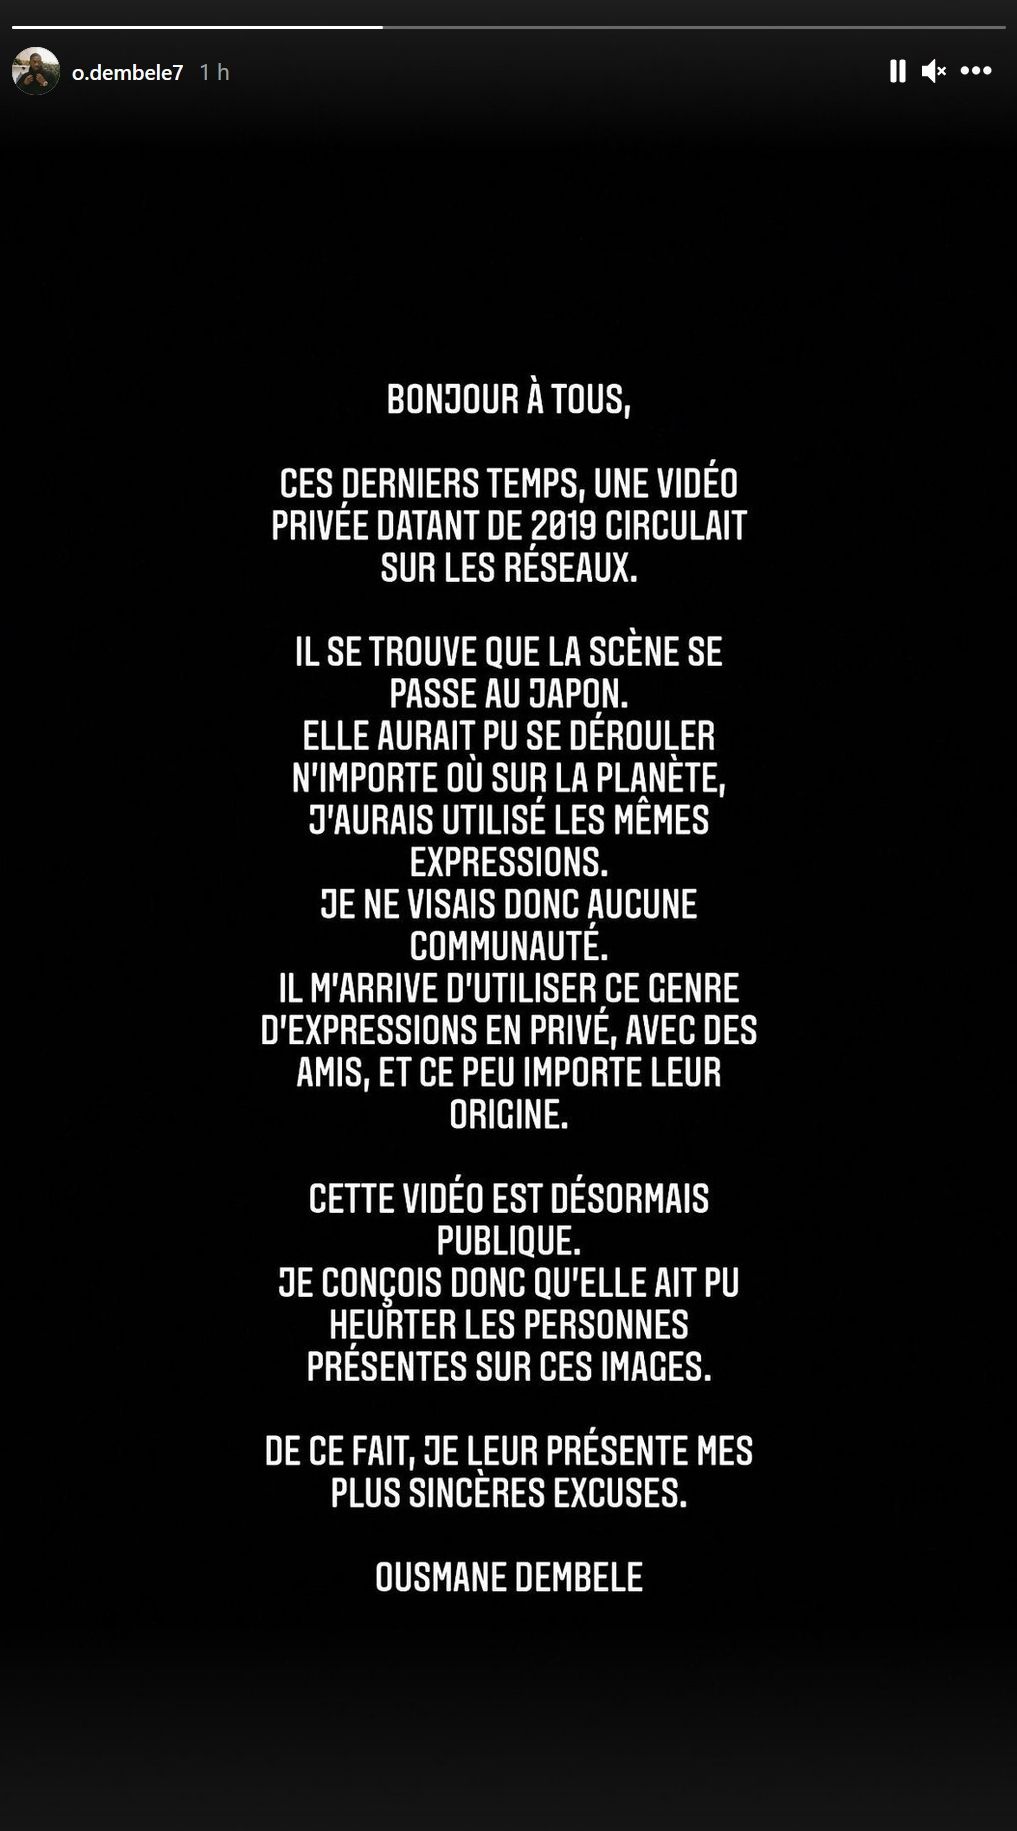  Ousmane Dembélé @Instagram